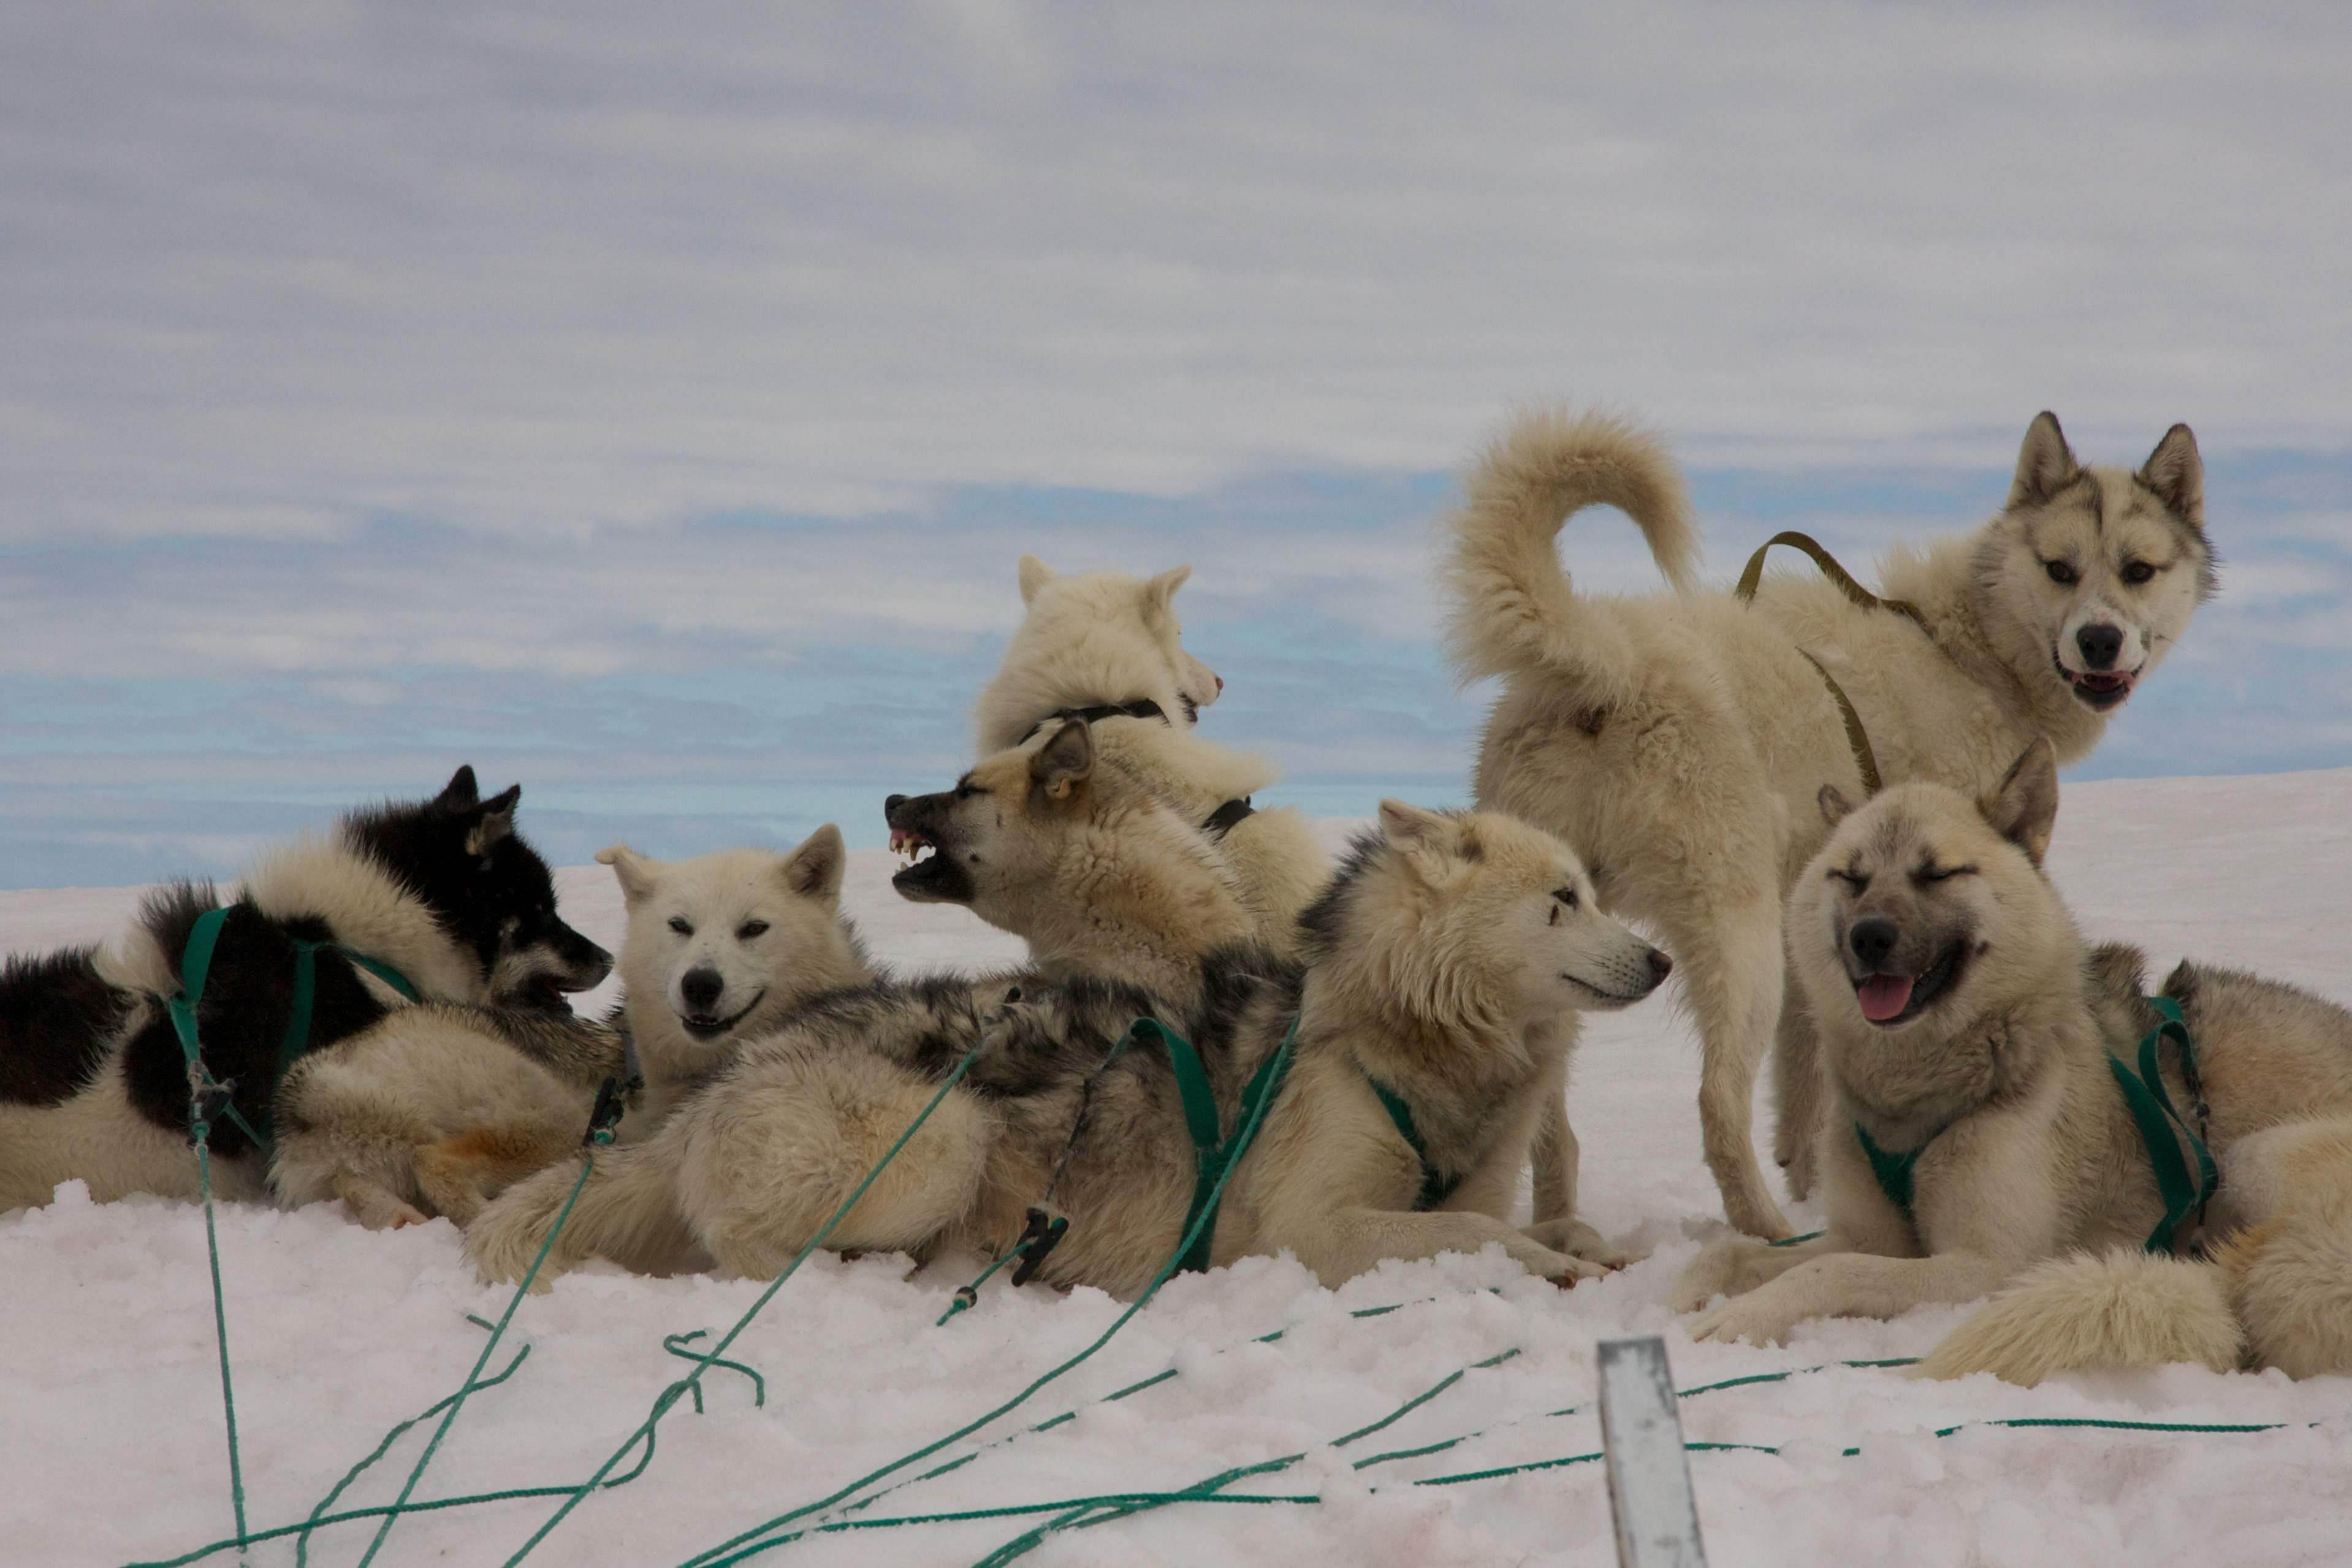 Гренландская собака (гренландсхунд) - всё о породе, правила ухода и другие важные аспекты + фото